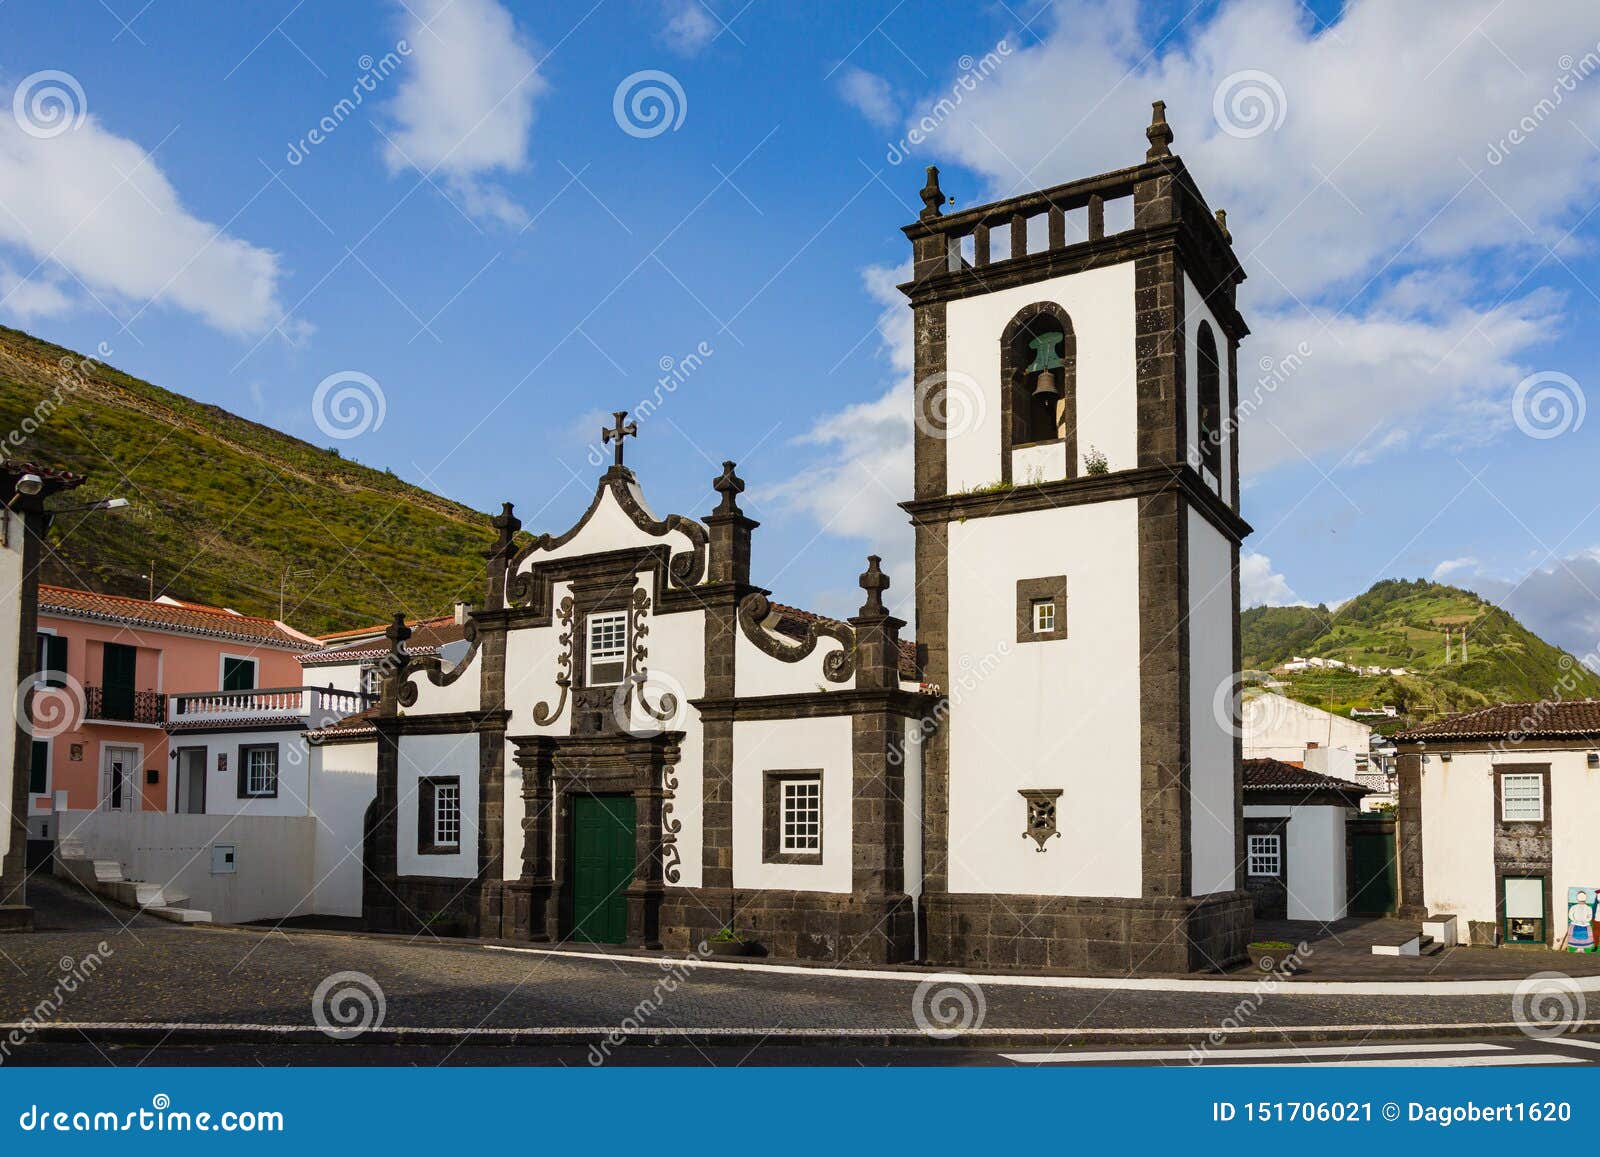 church and centro de turismo in povoacao on sao miguel island, azores